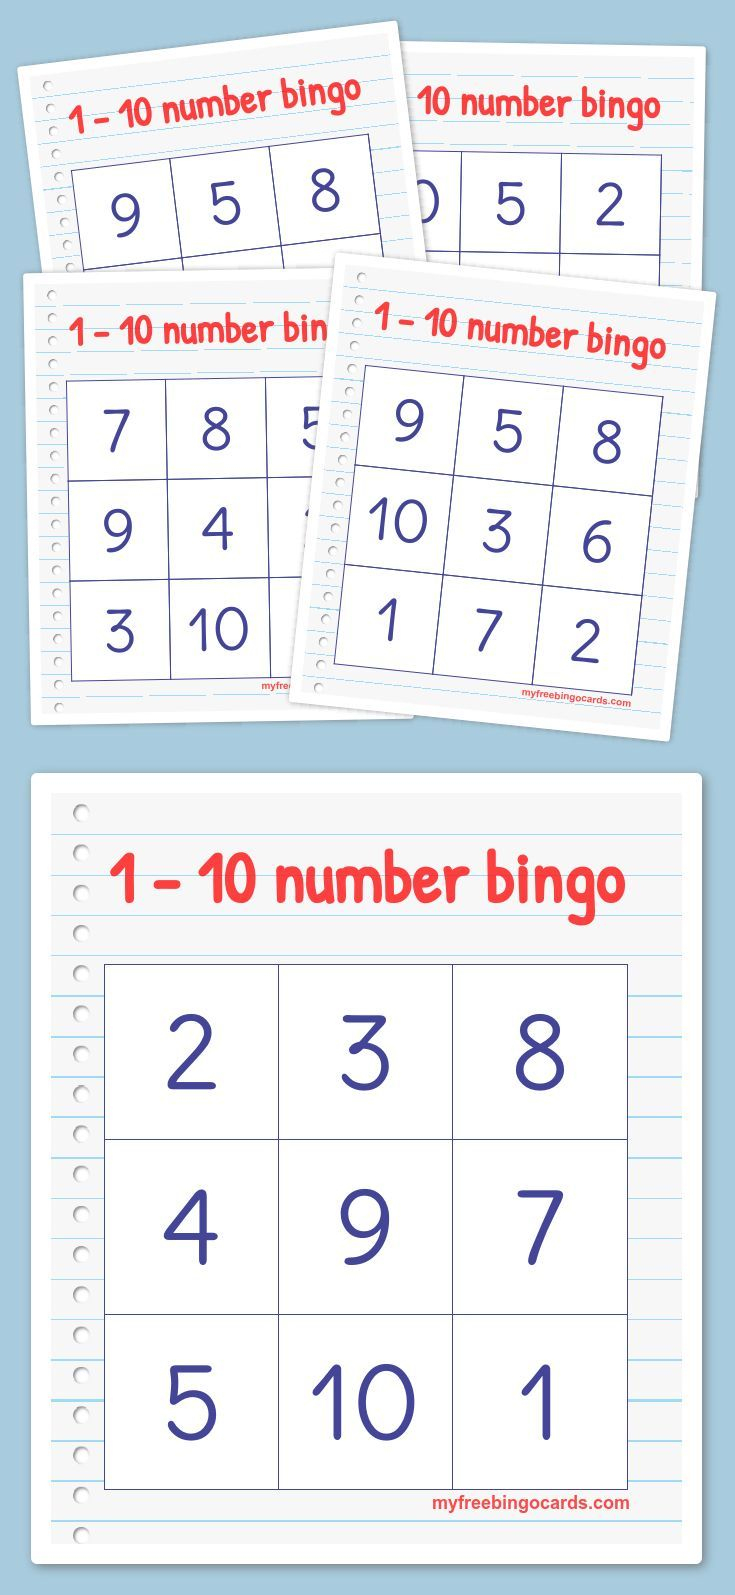 Free Printable Bingo Cards - Bingo Kaarten, Wiskunde